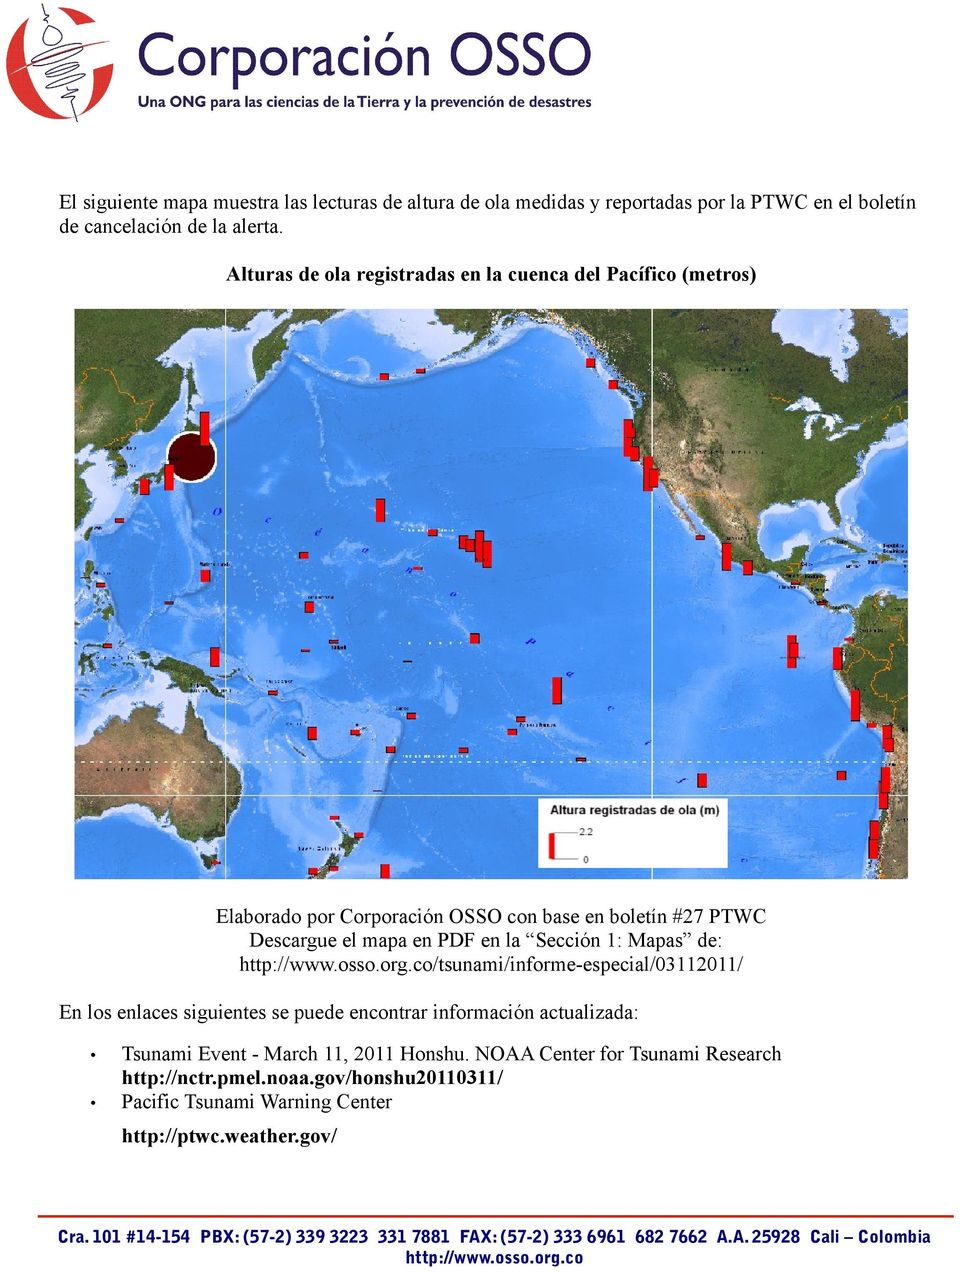 PDF en la Sección 1: Mapas de: /tsunami/informe-especial/03112011/ En los enlaces siguientes se puede encontrar información actualizada: Tsunami